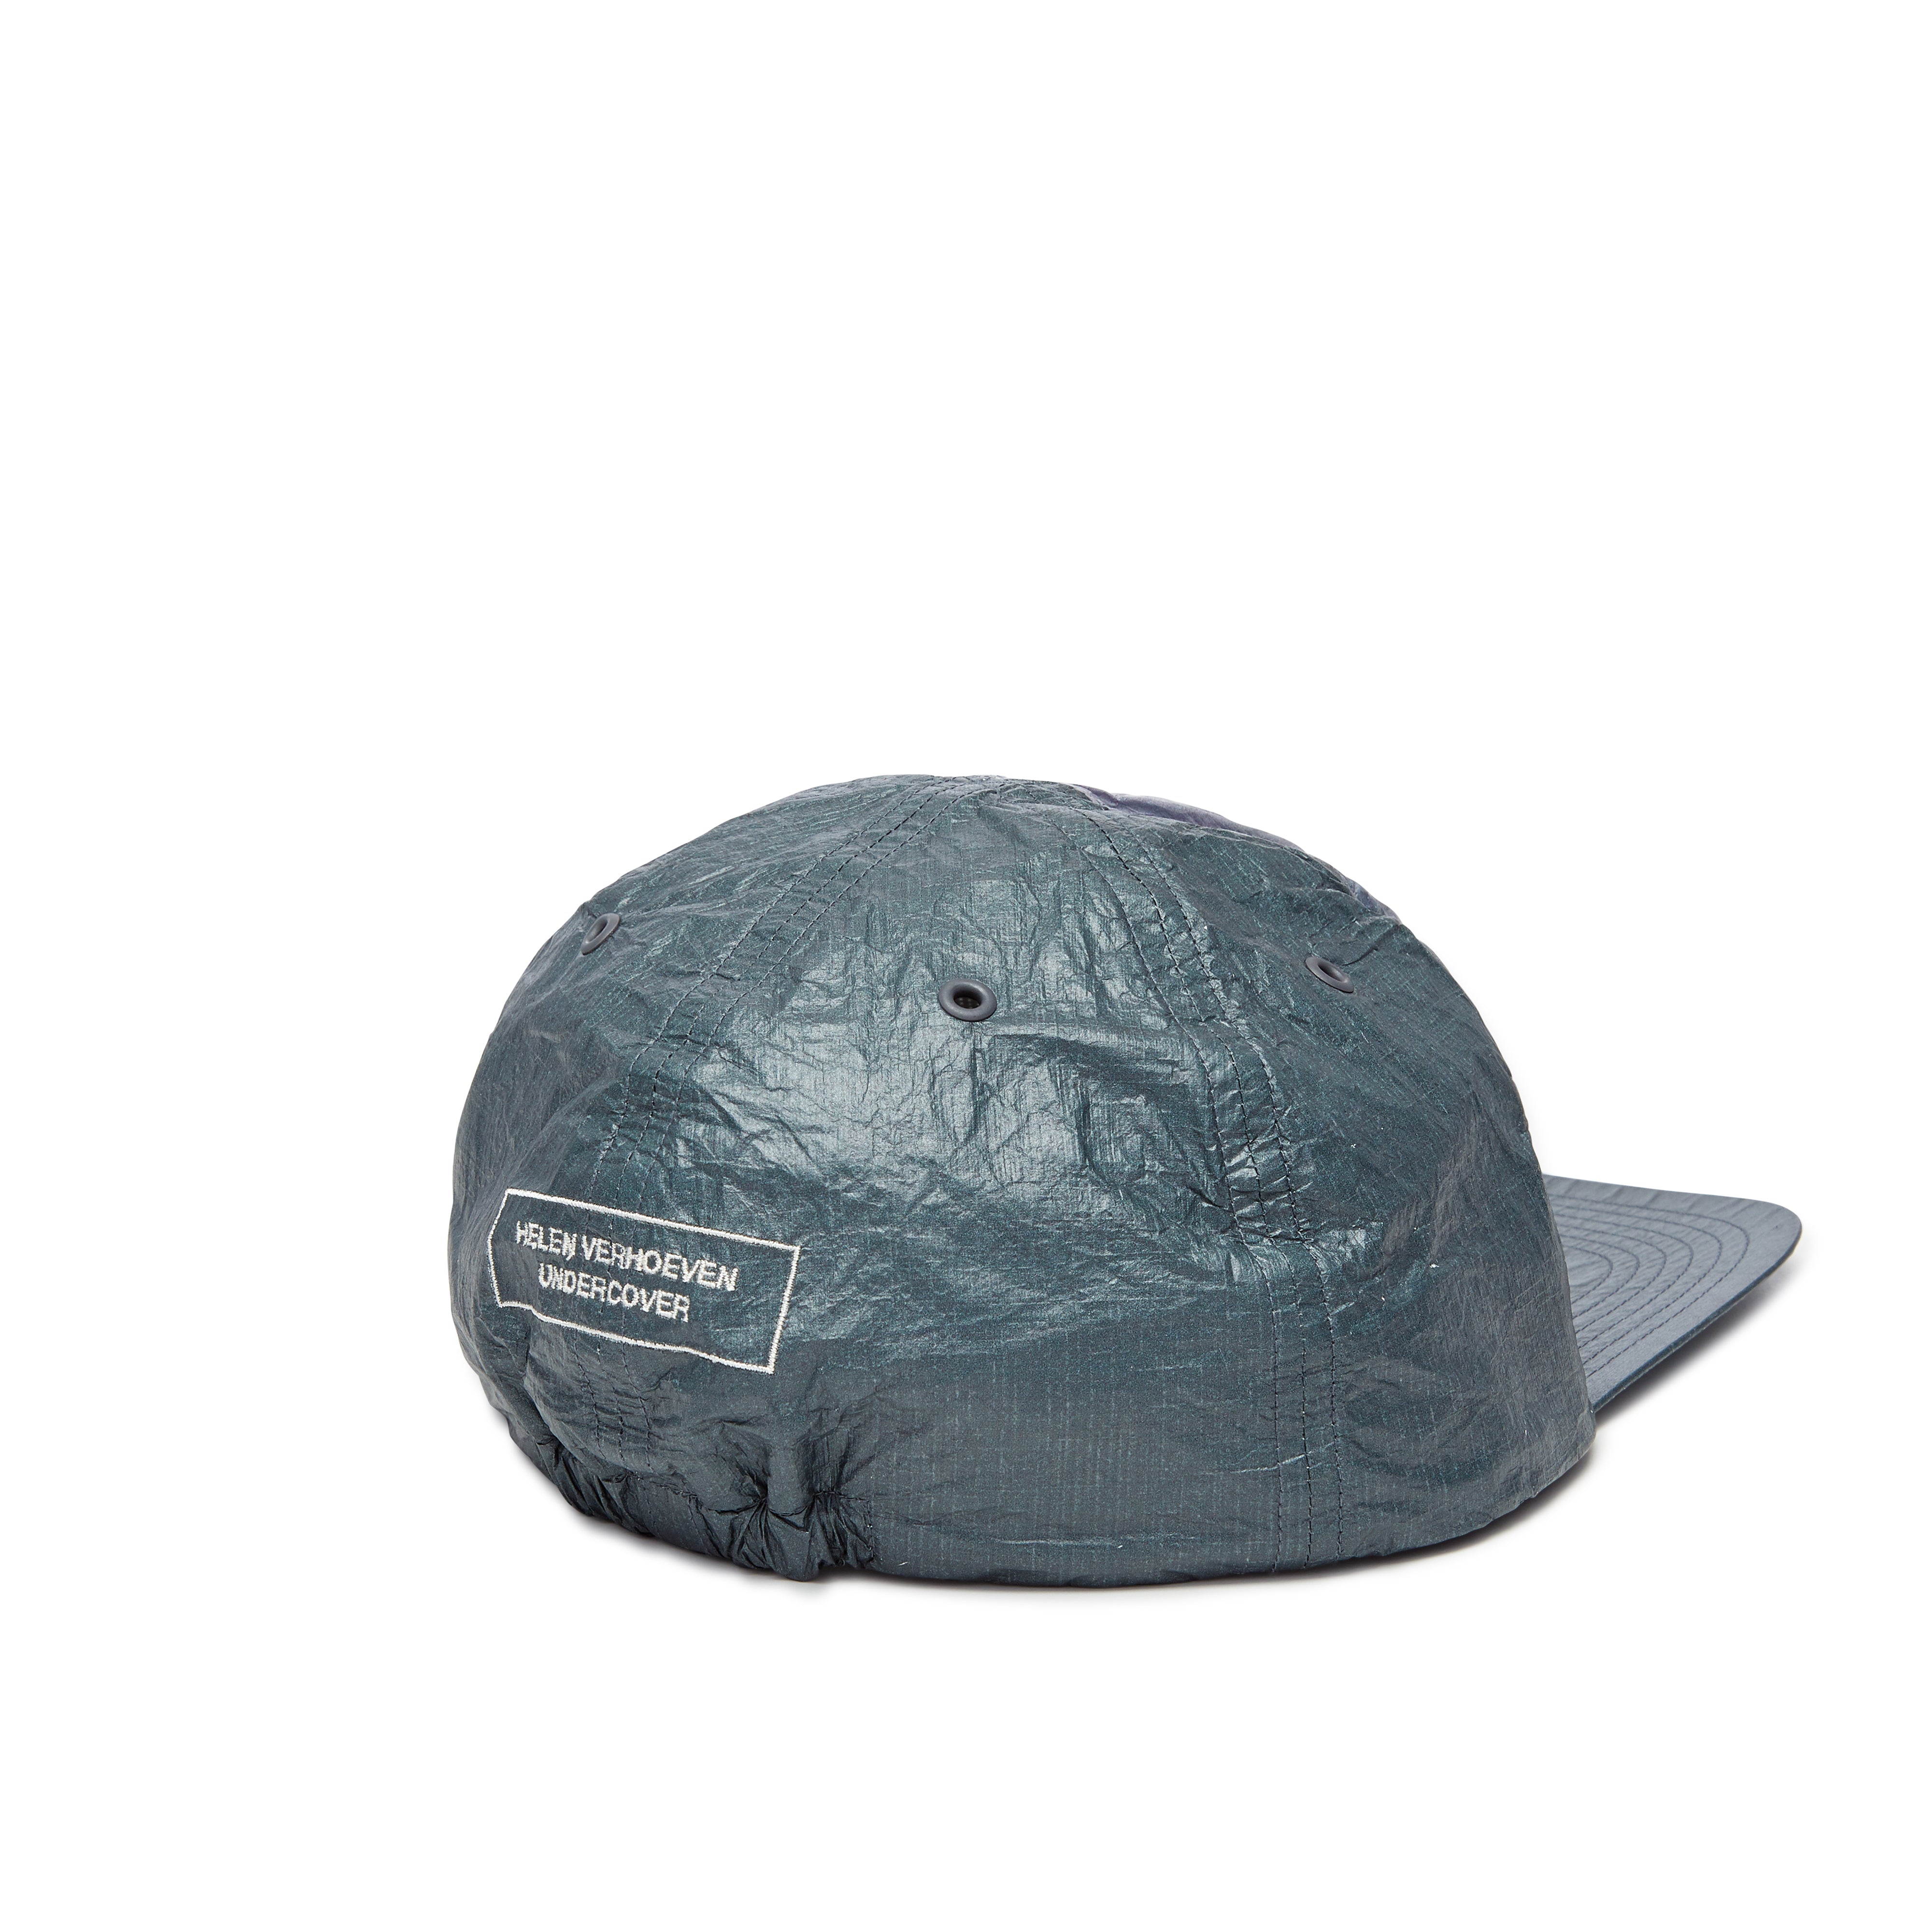 Undercover - Men's Hat - (Grey/Green)